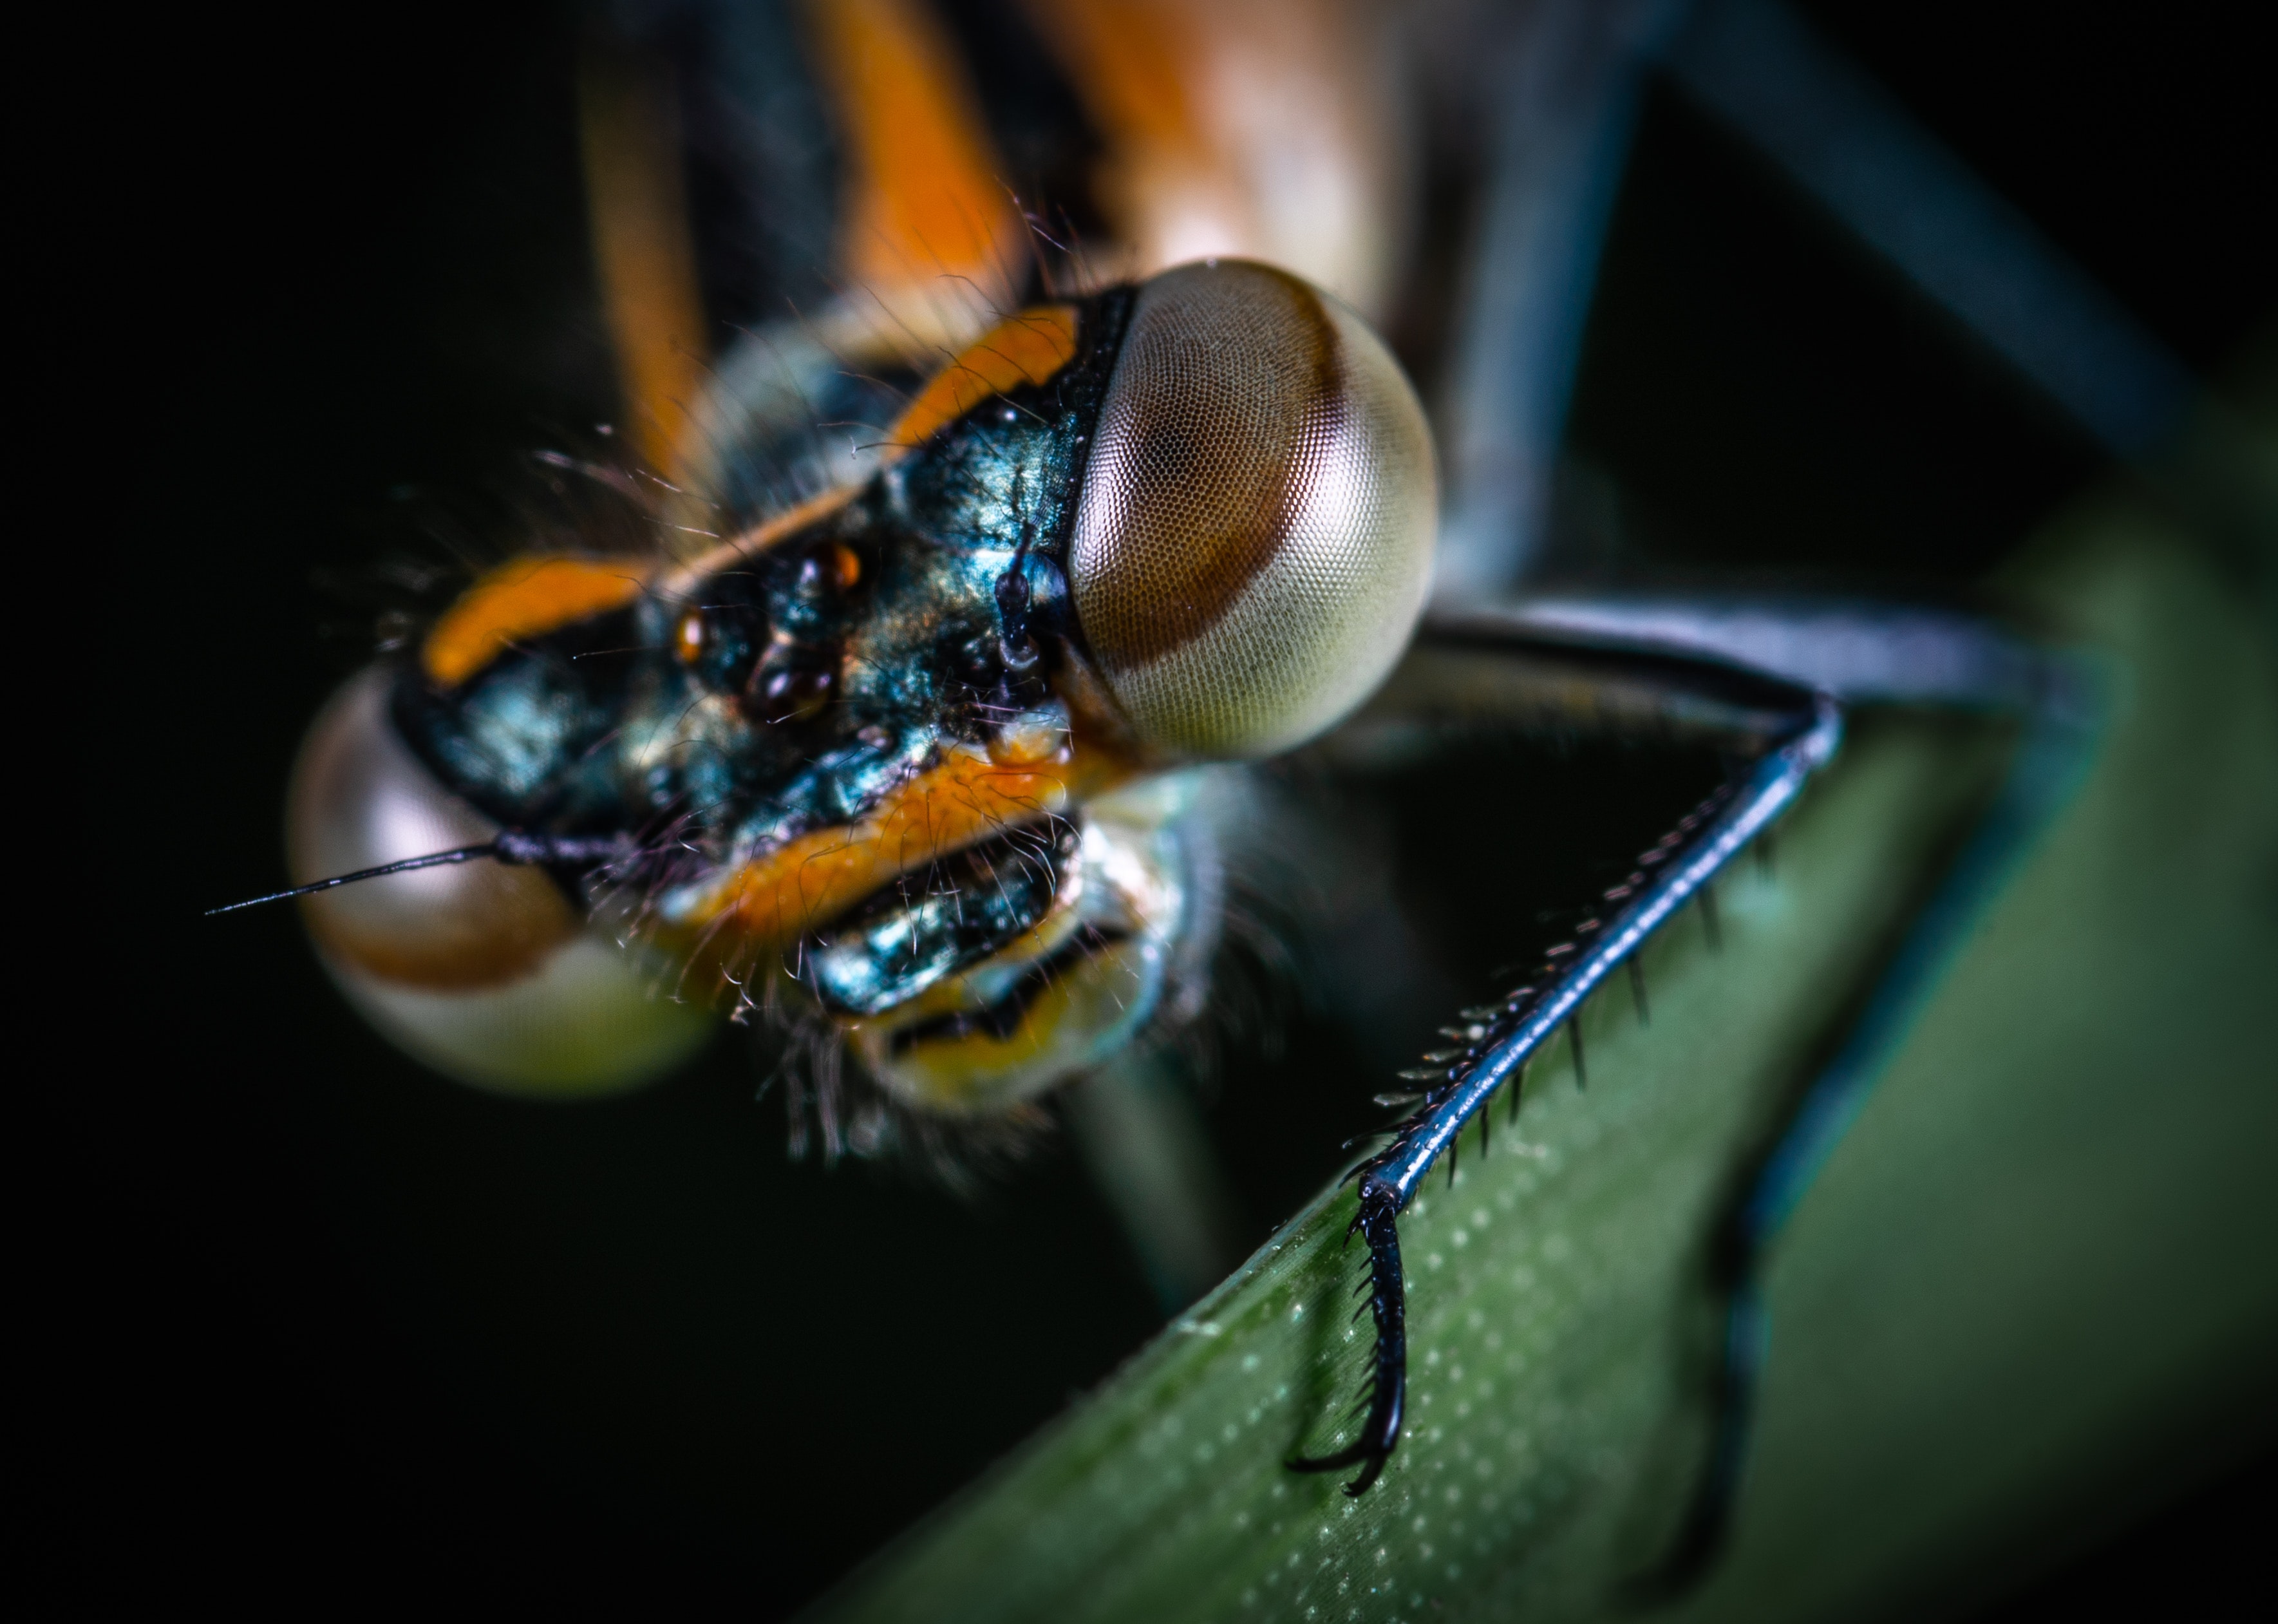 Lenti d'ingrandimento per entomologia - Entomorpho